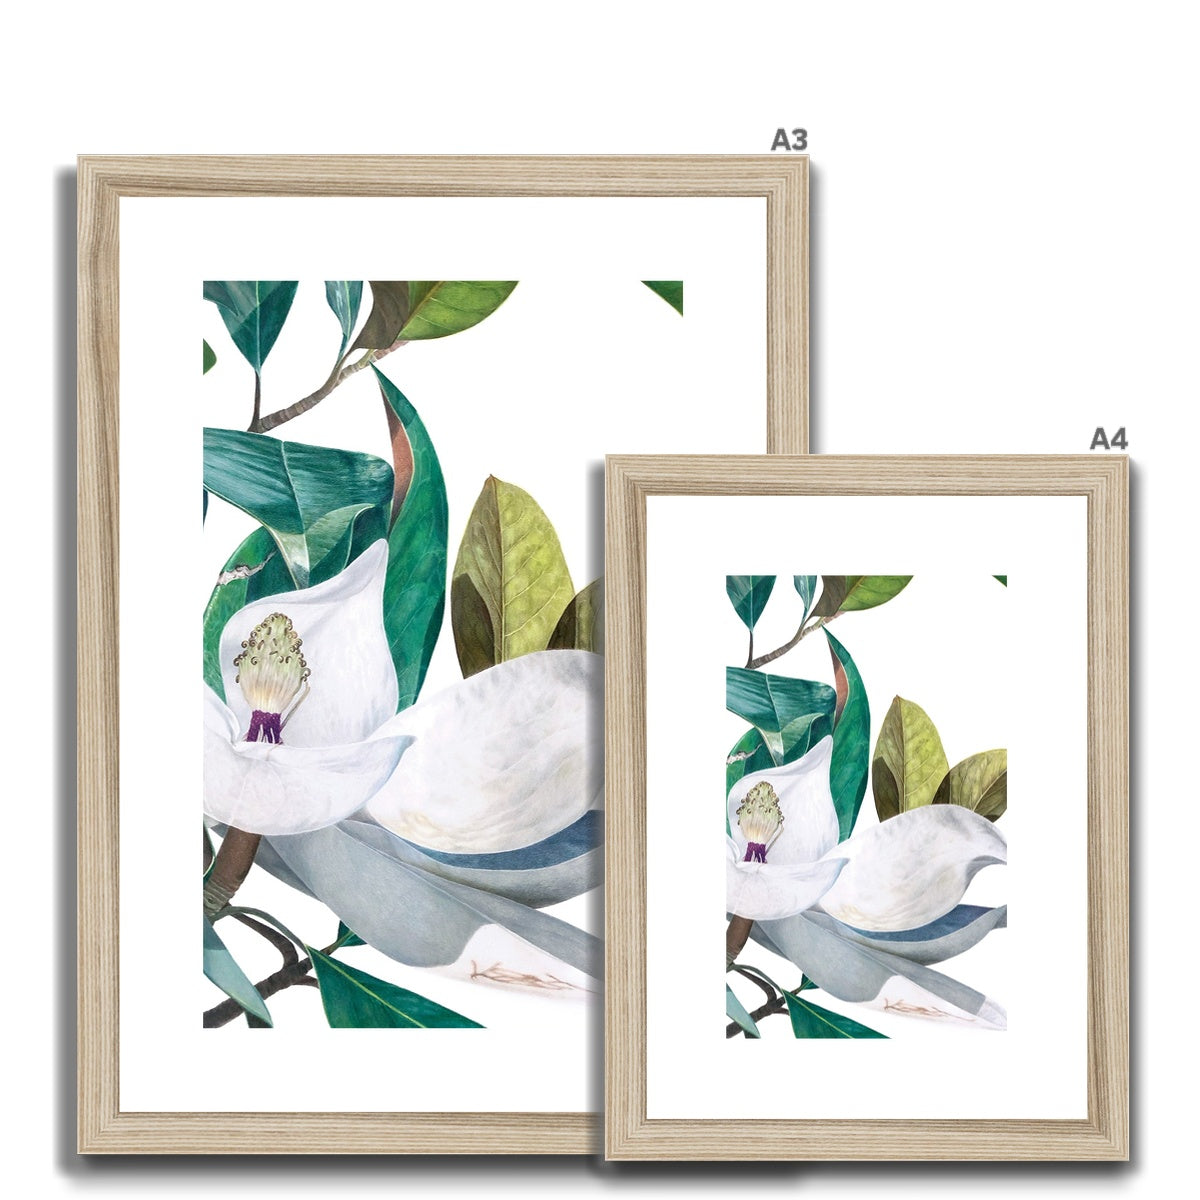 Magnolia bloom Framed & Mounted Print.